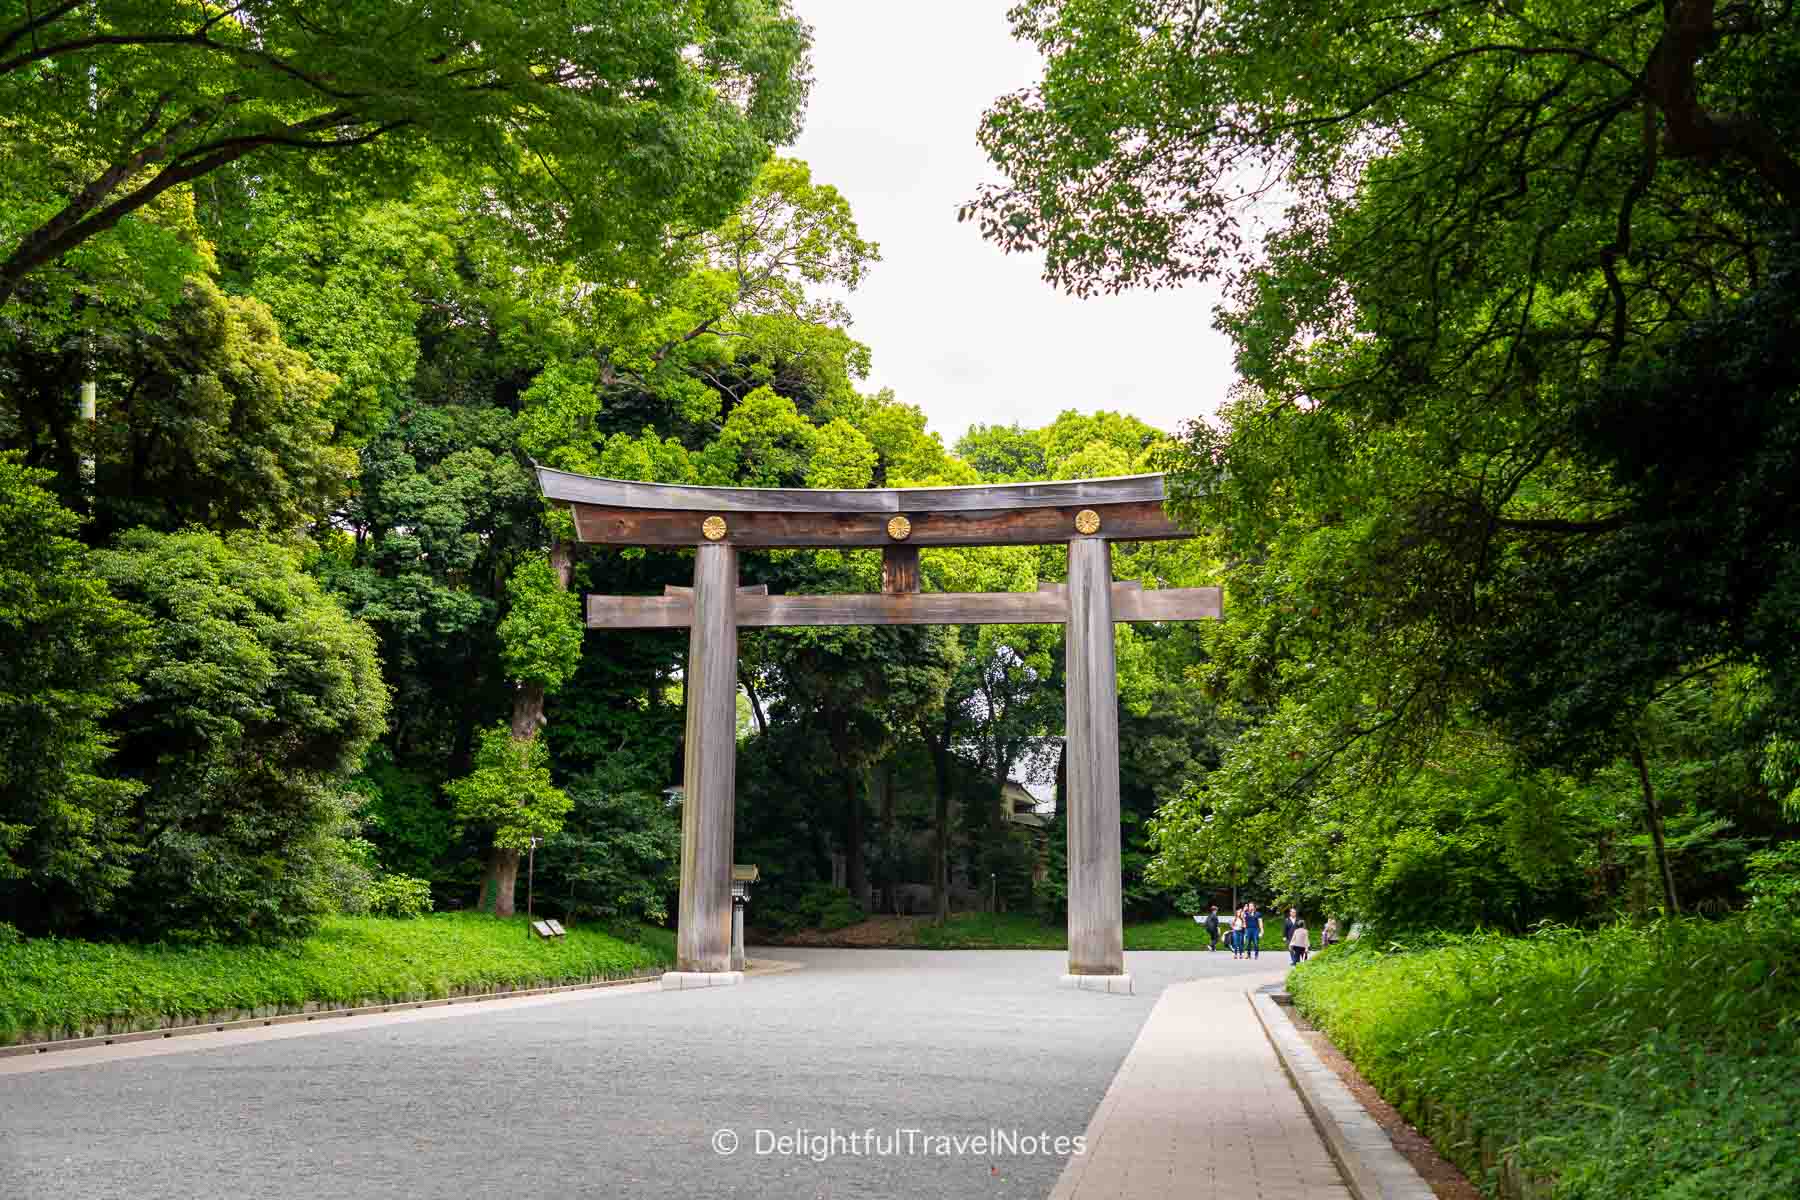 the second torii gate at Meiji Jingu in Tokyo.